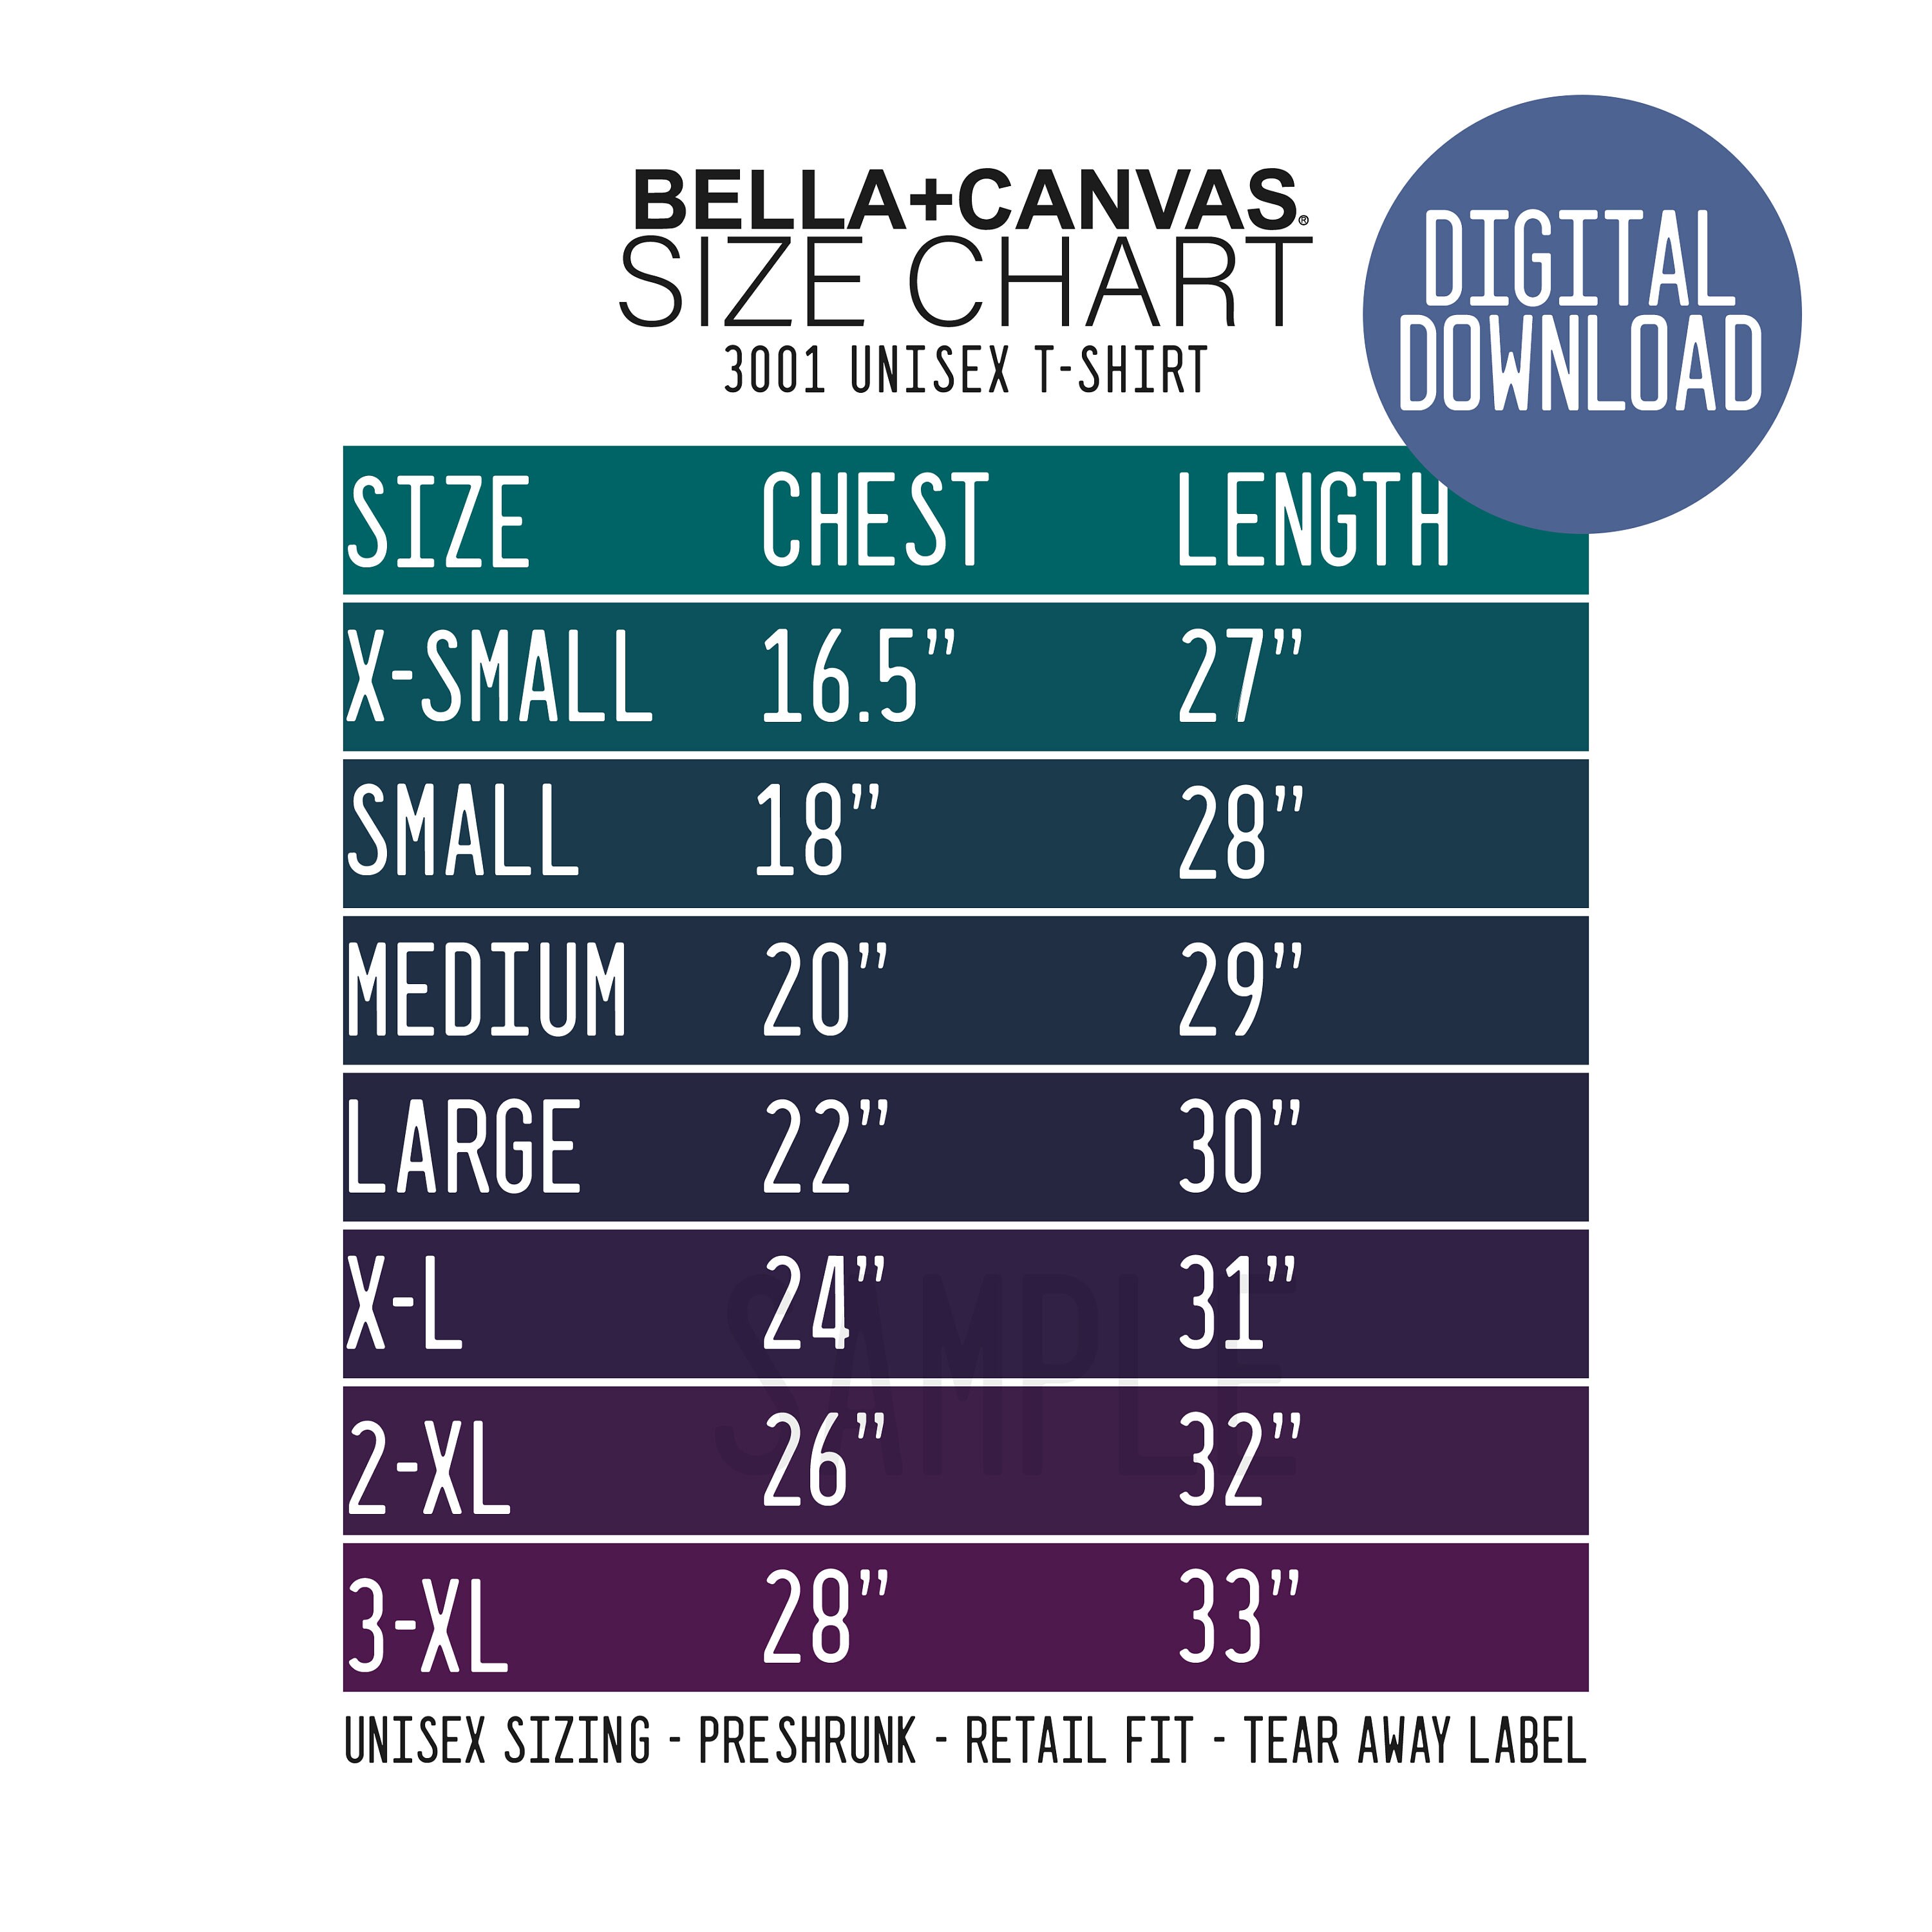 Bella Canvas 3001 Size Chart Bella Canvas Size Chart | Etsy